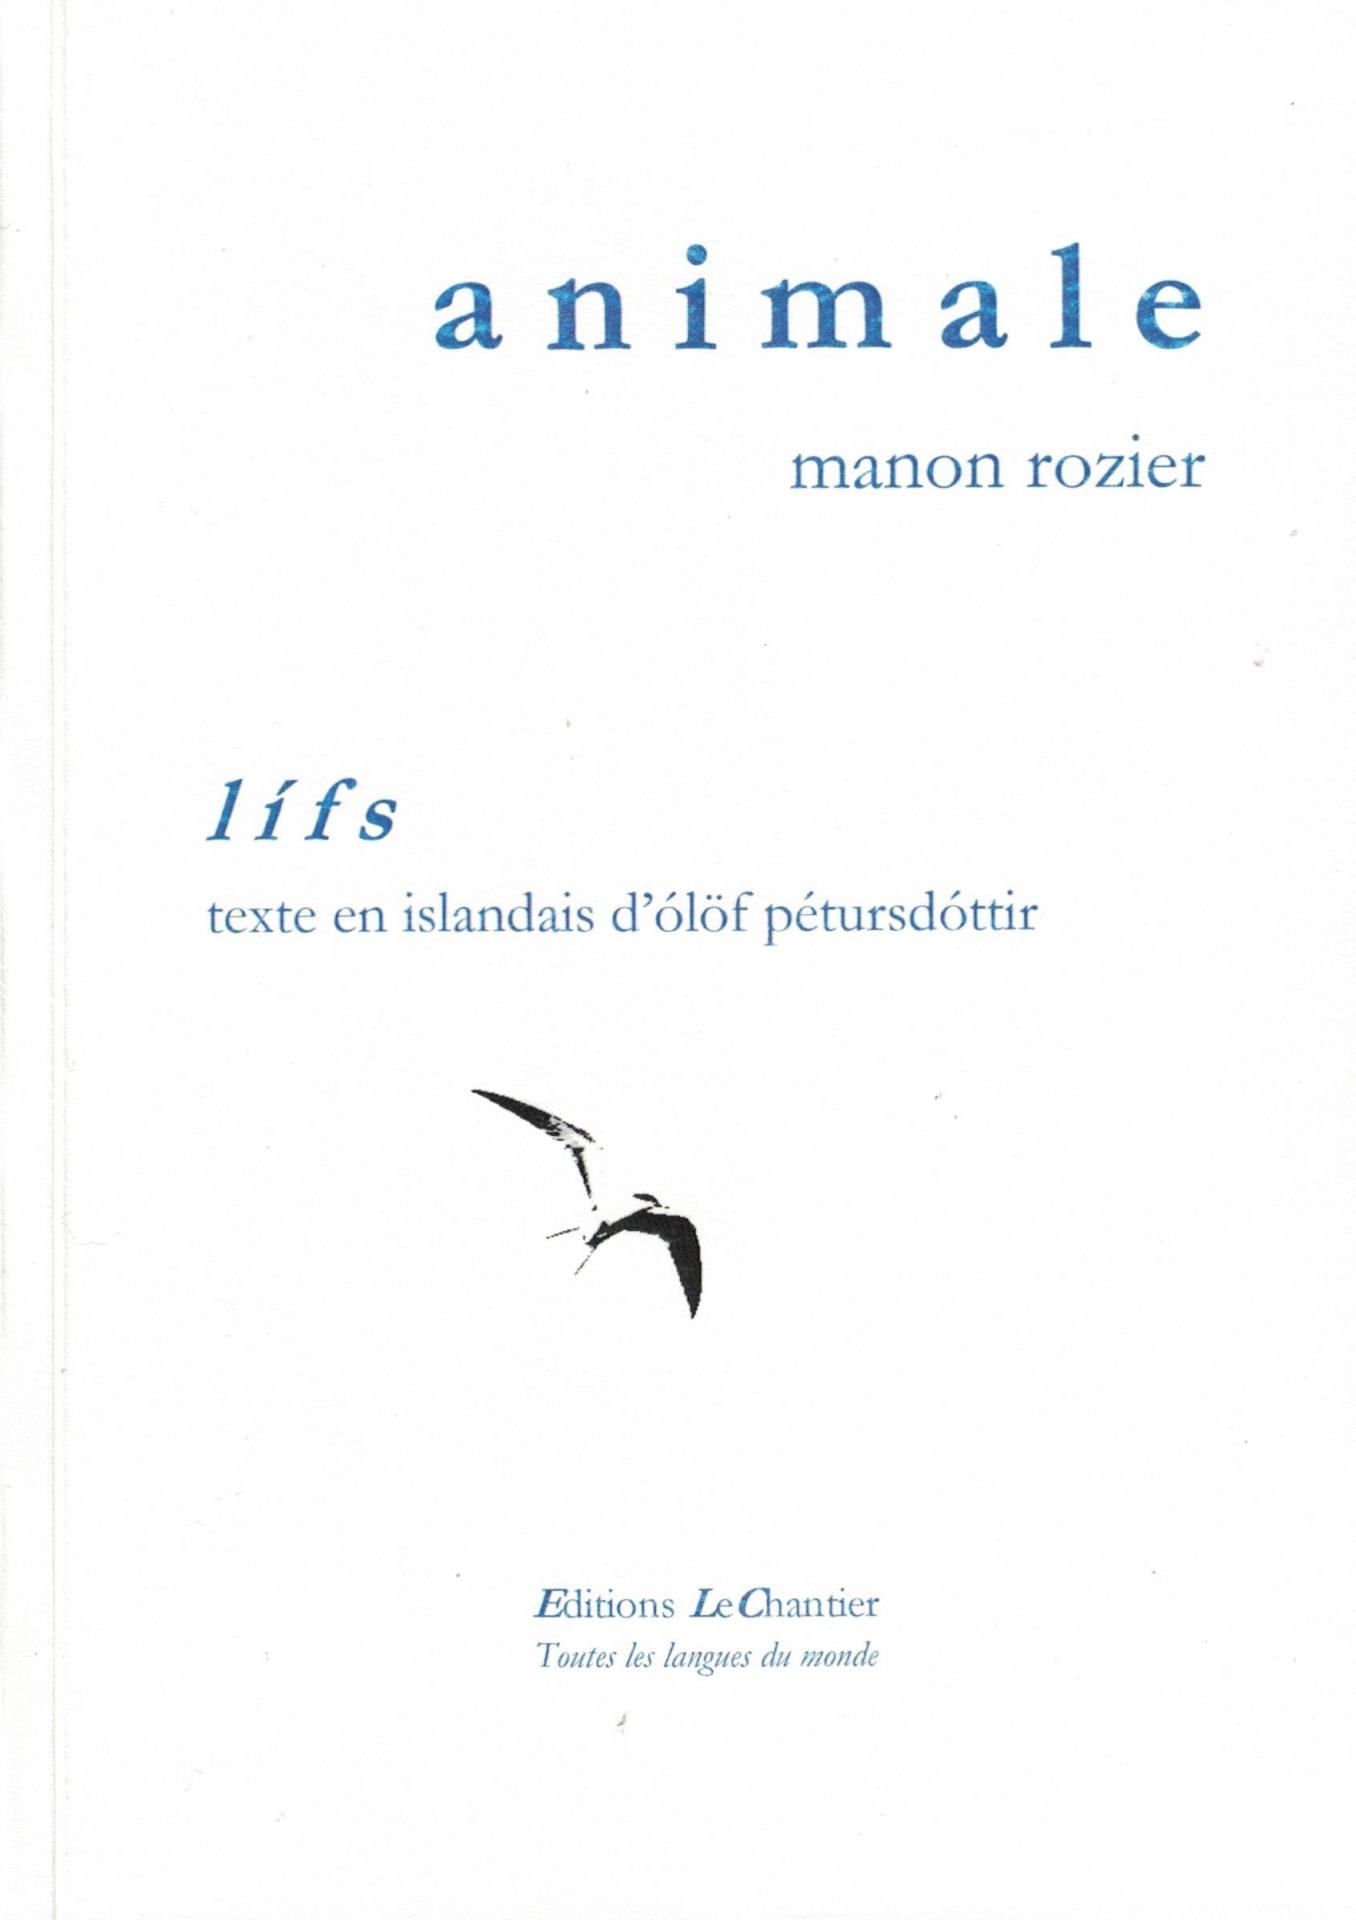 animale - Manon Rozier